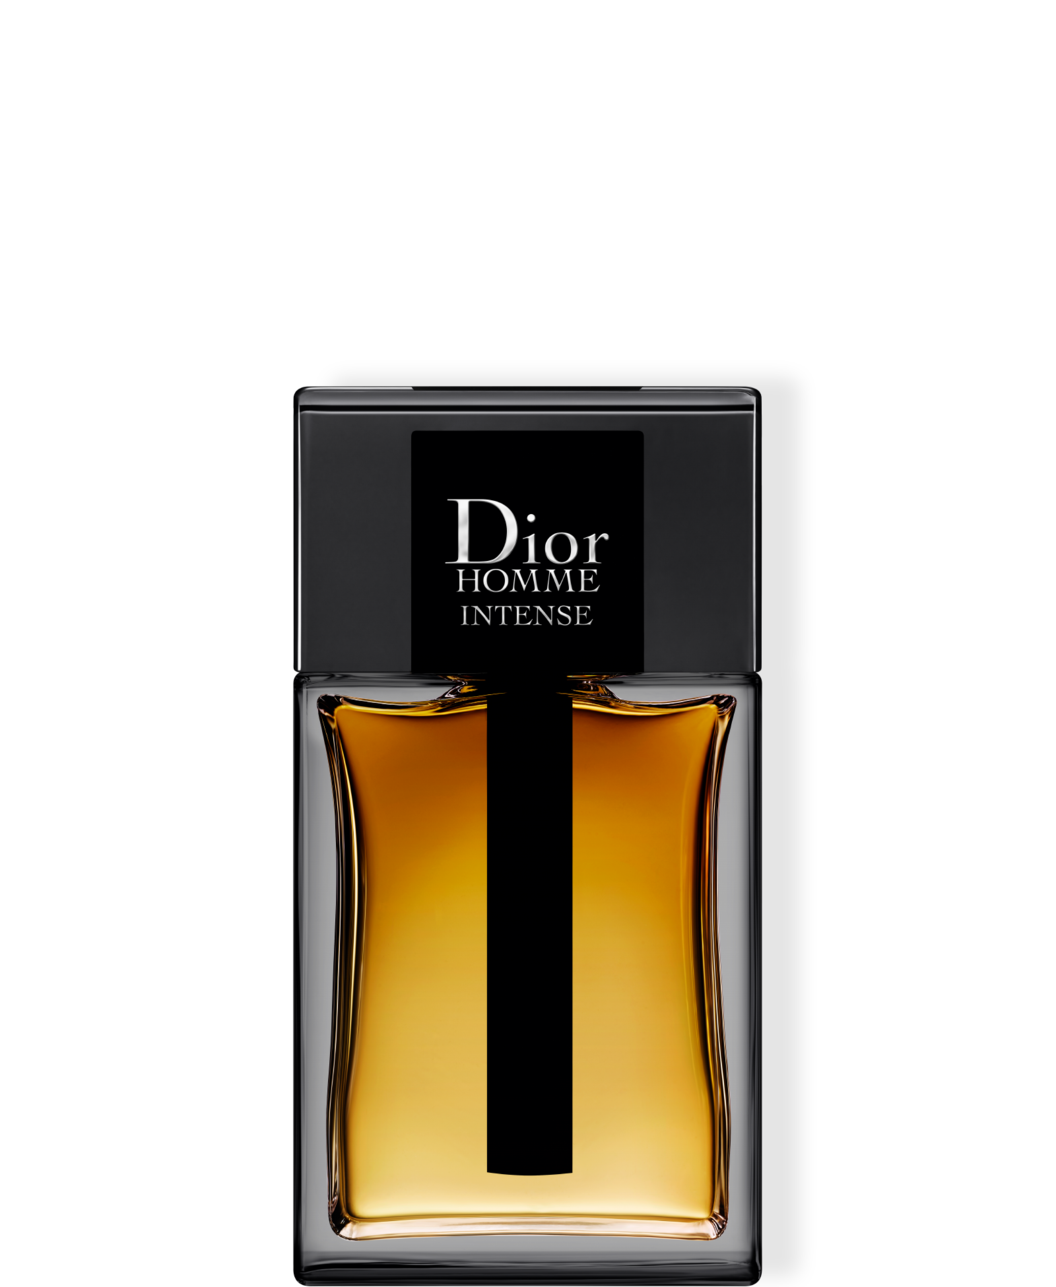 Dior Homme Intense EdP 150 ml för 1750 kr på Kicks